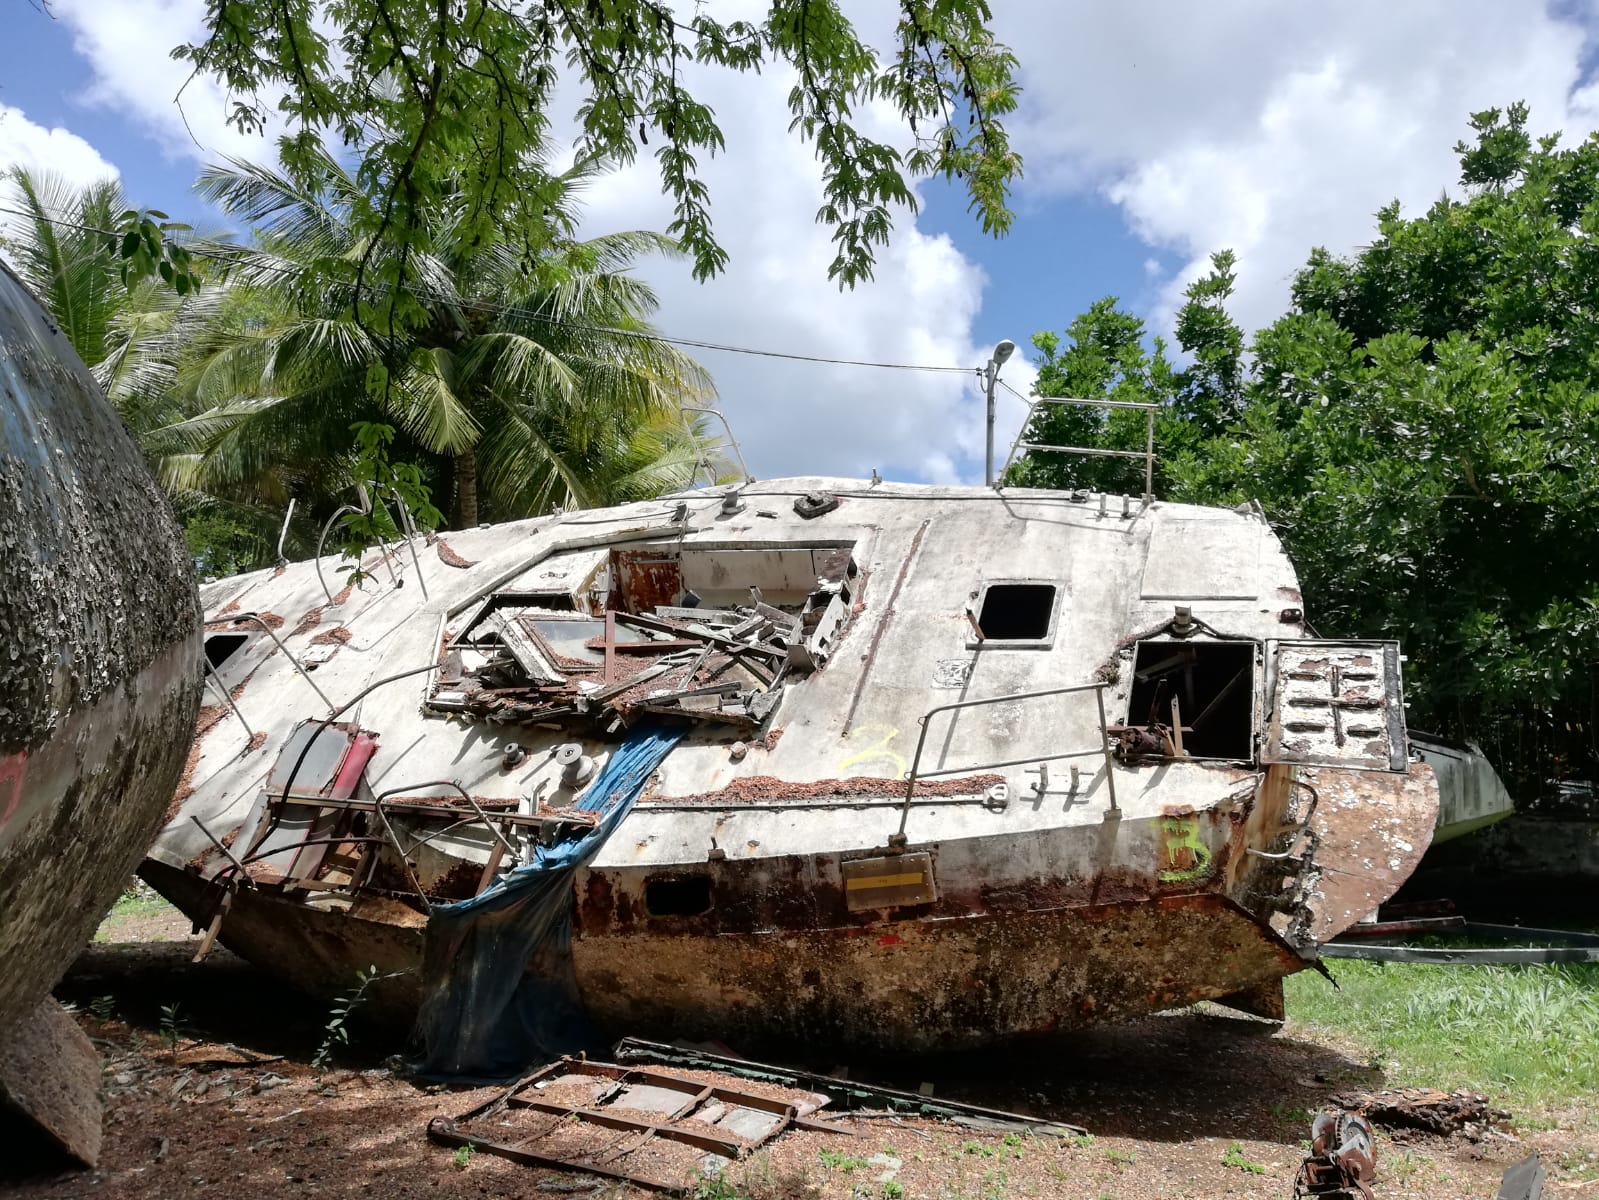     Des bateaux hors d'usage évacués de la mangrove de Port Cohé

